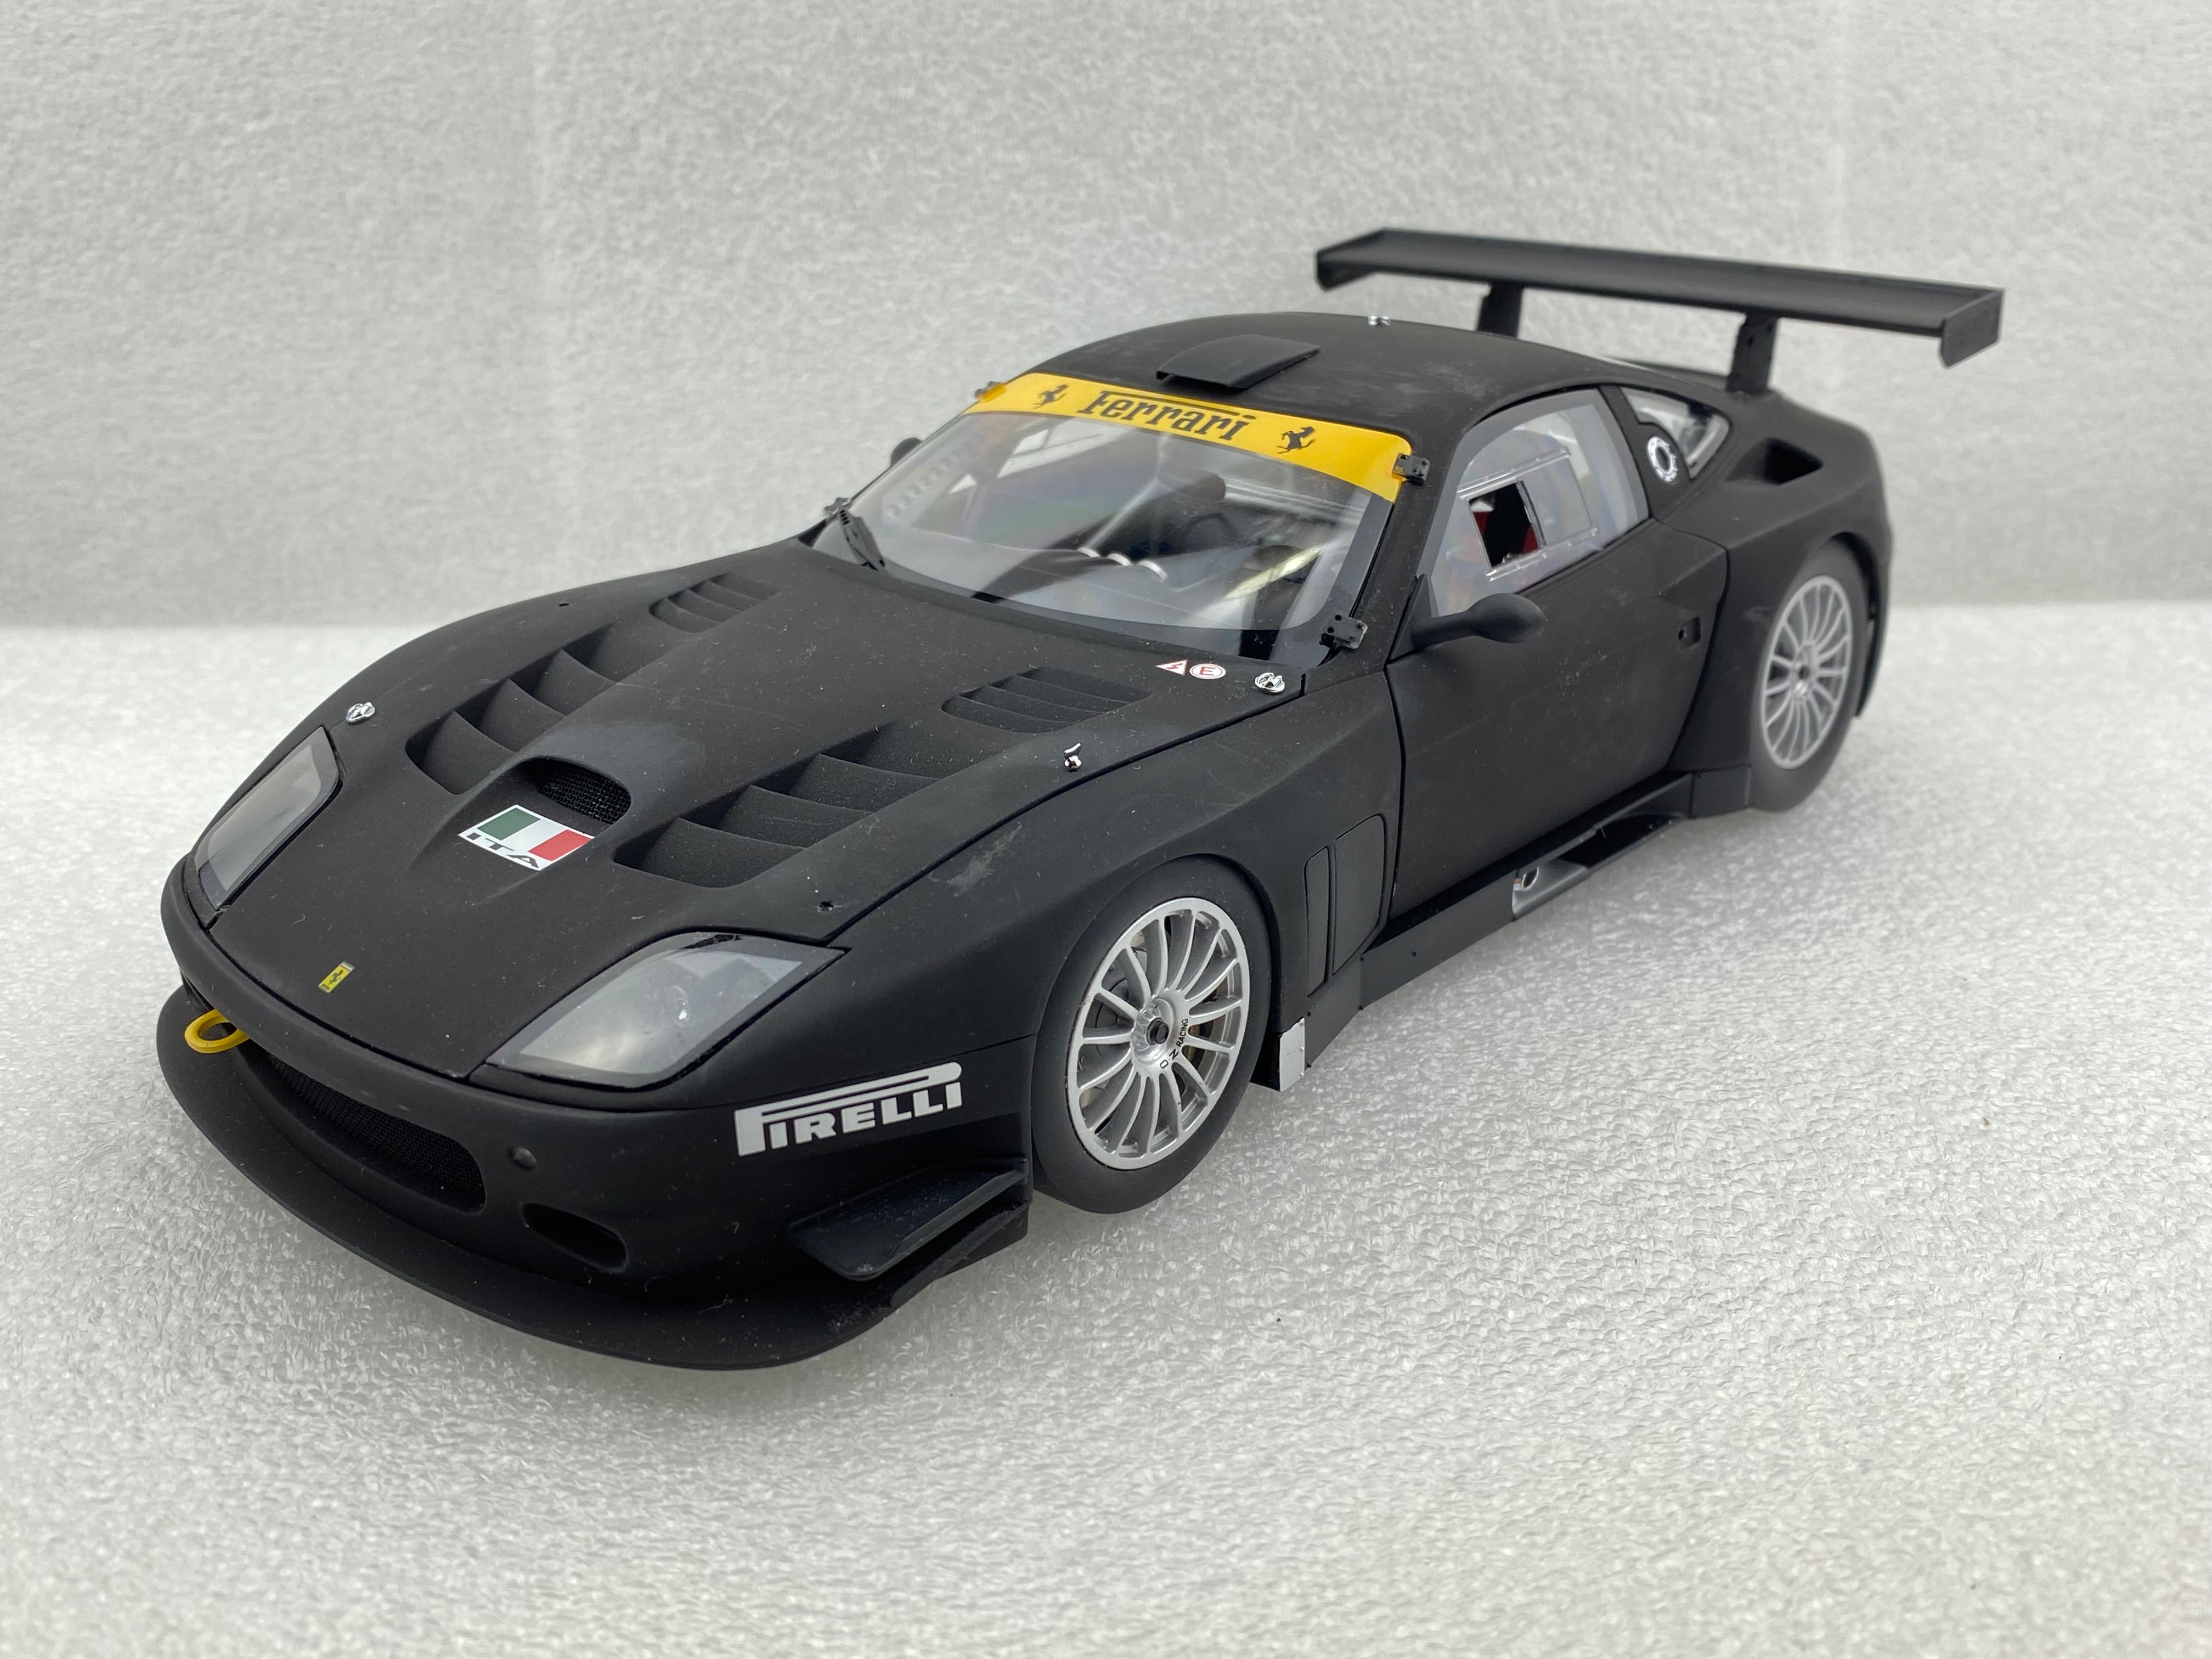 Kyosho 1:18 Ferrari 575 GTC Evoluzione 2005 Matt Black 08392A (Clearan